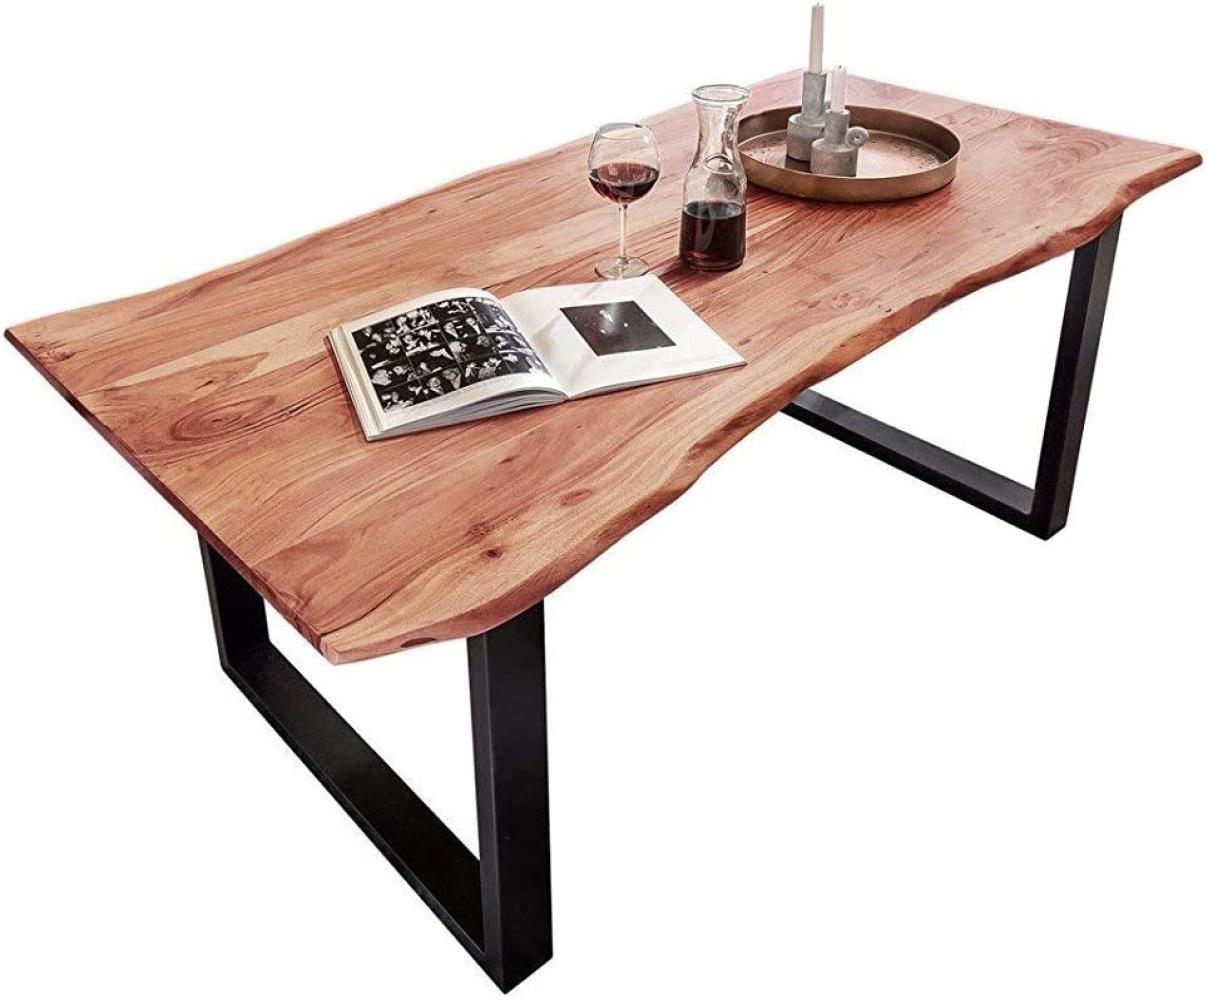 SAM Baumkantentisch 180x90 cm Quarto, Esszimmertisch aus Akazie, Holz-Tisch mit schwarz lackierten Beinen Bild 1